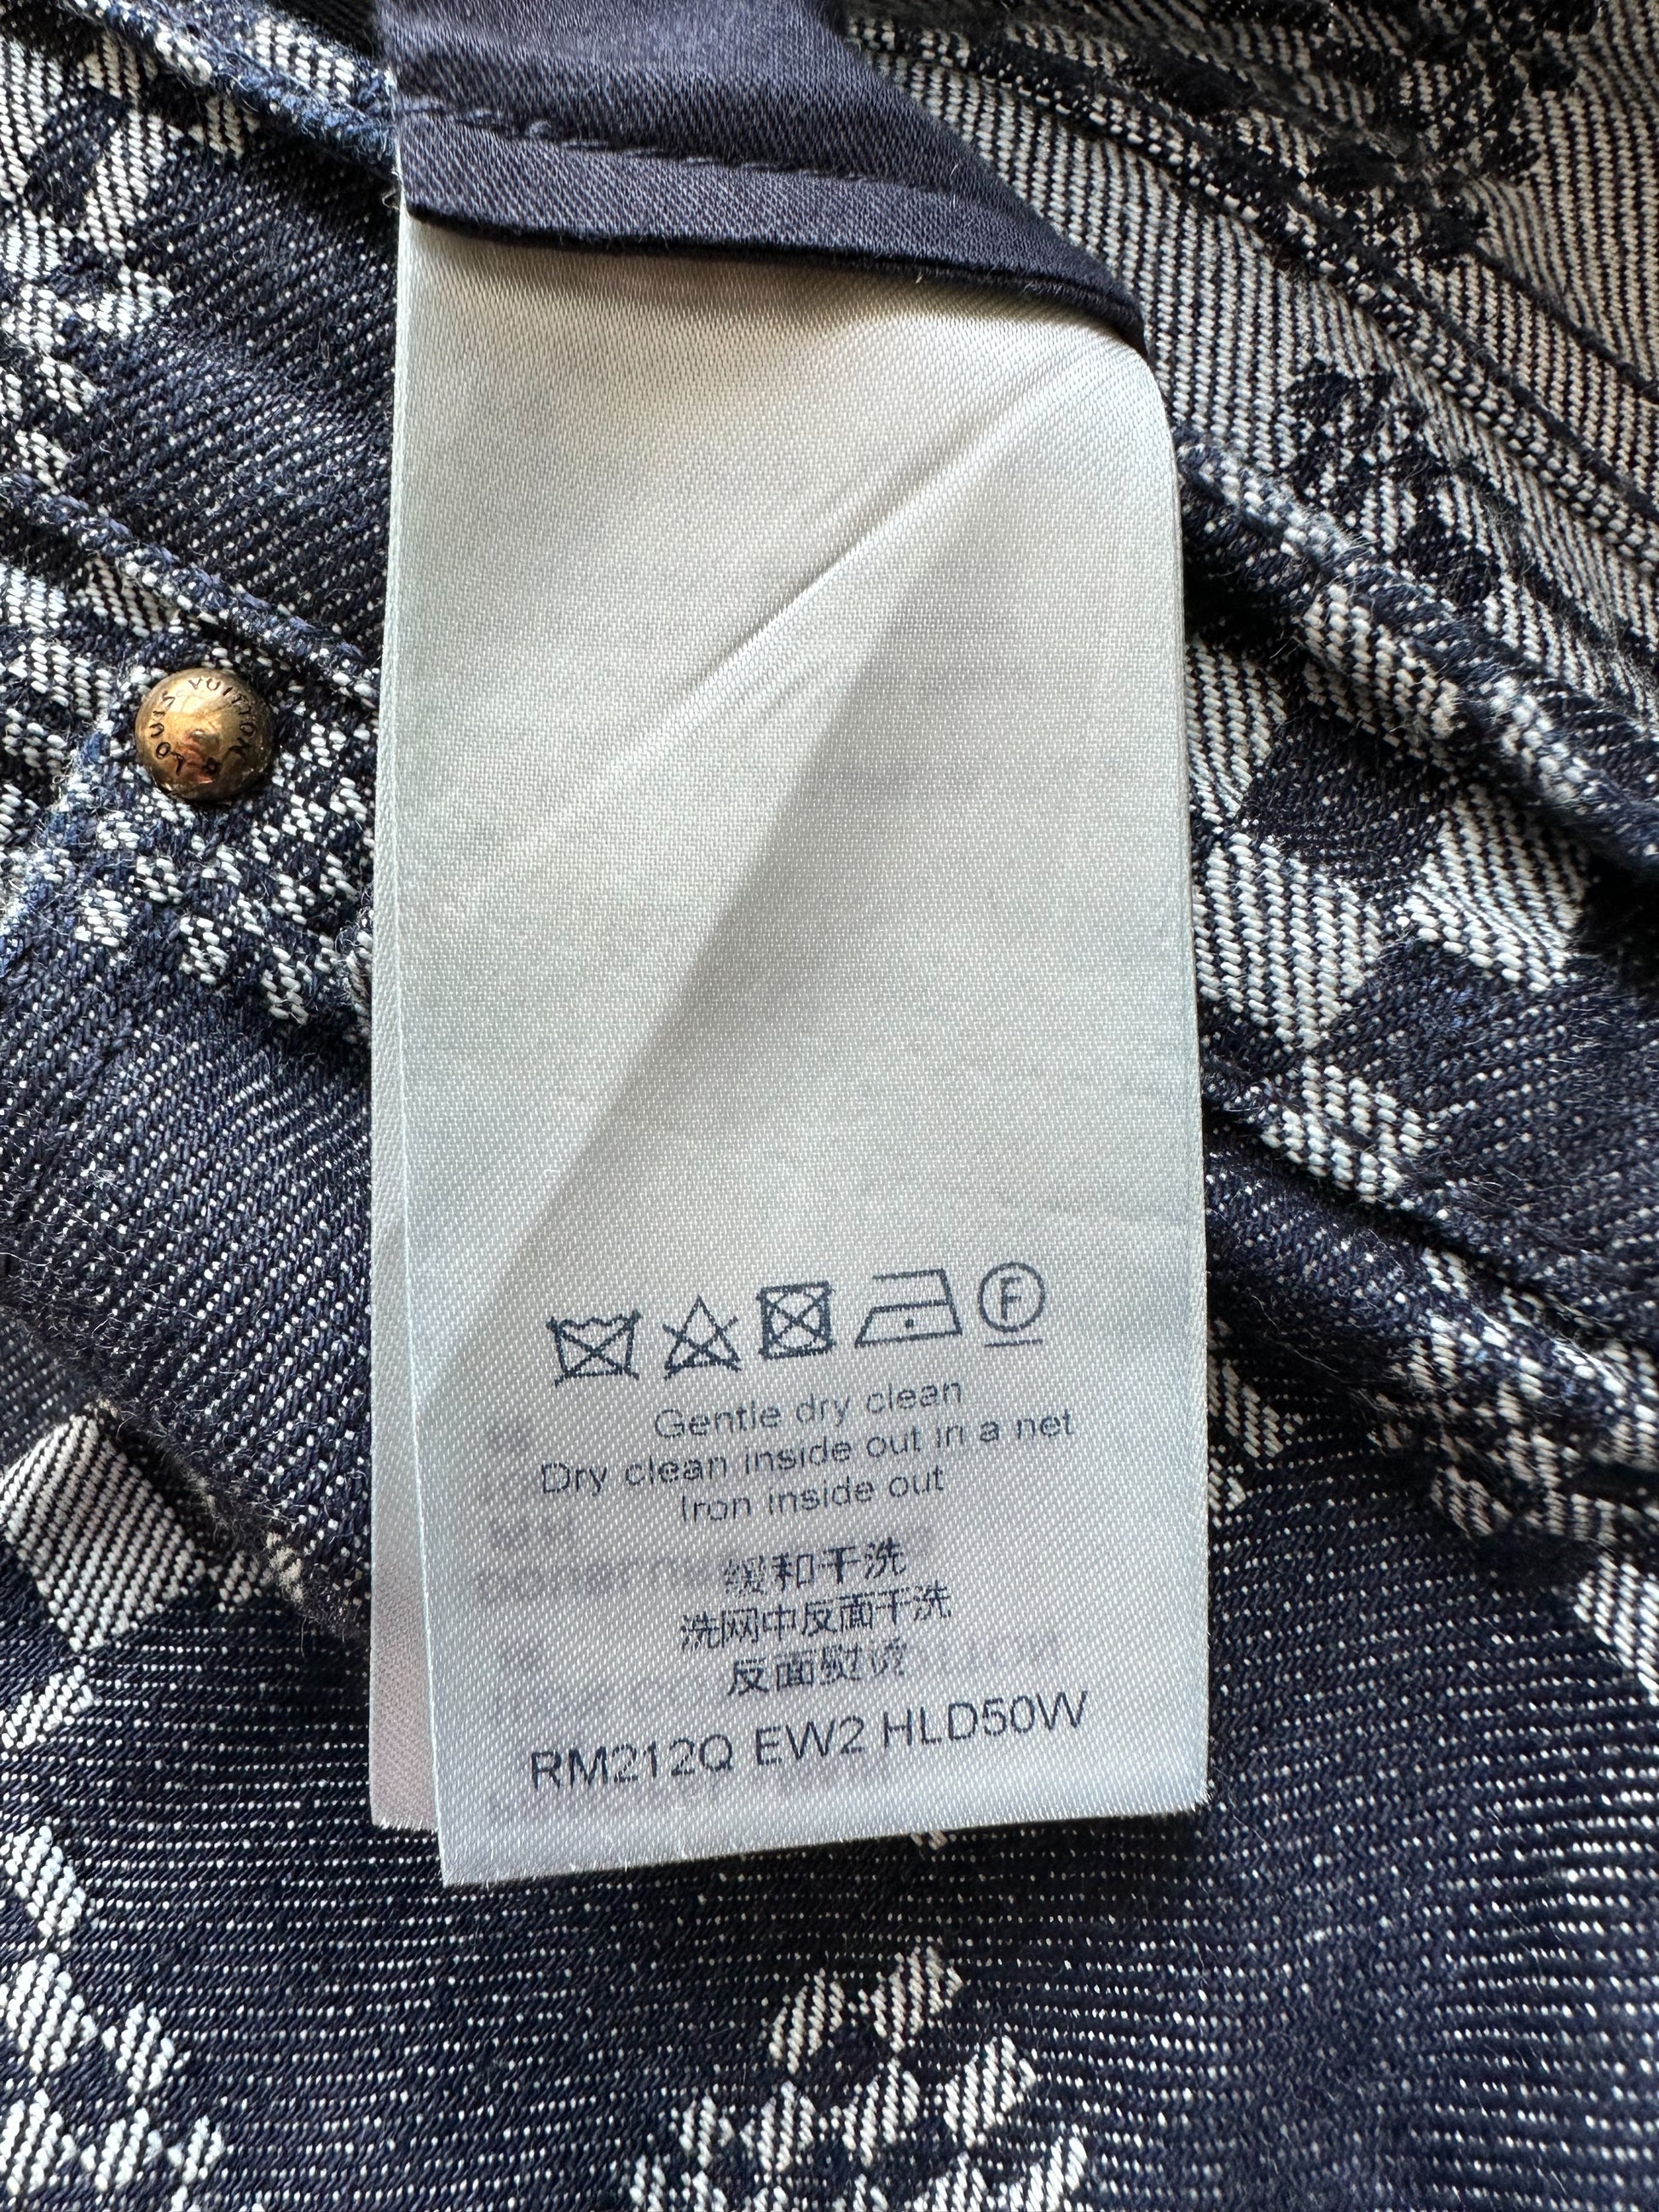 Louis Vuitton - Distorted Damier Denim Trousers - Indigo - Men - Size: 30 - Luxury